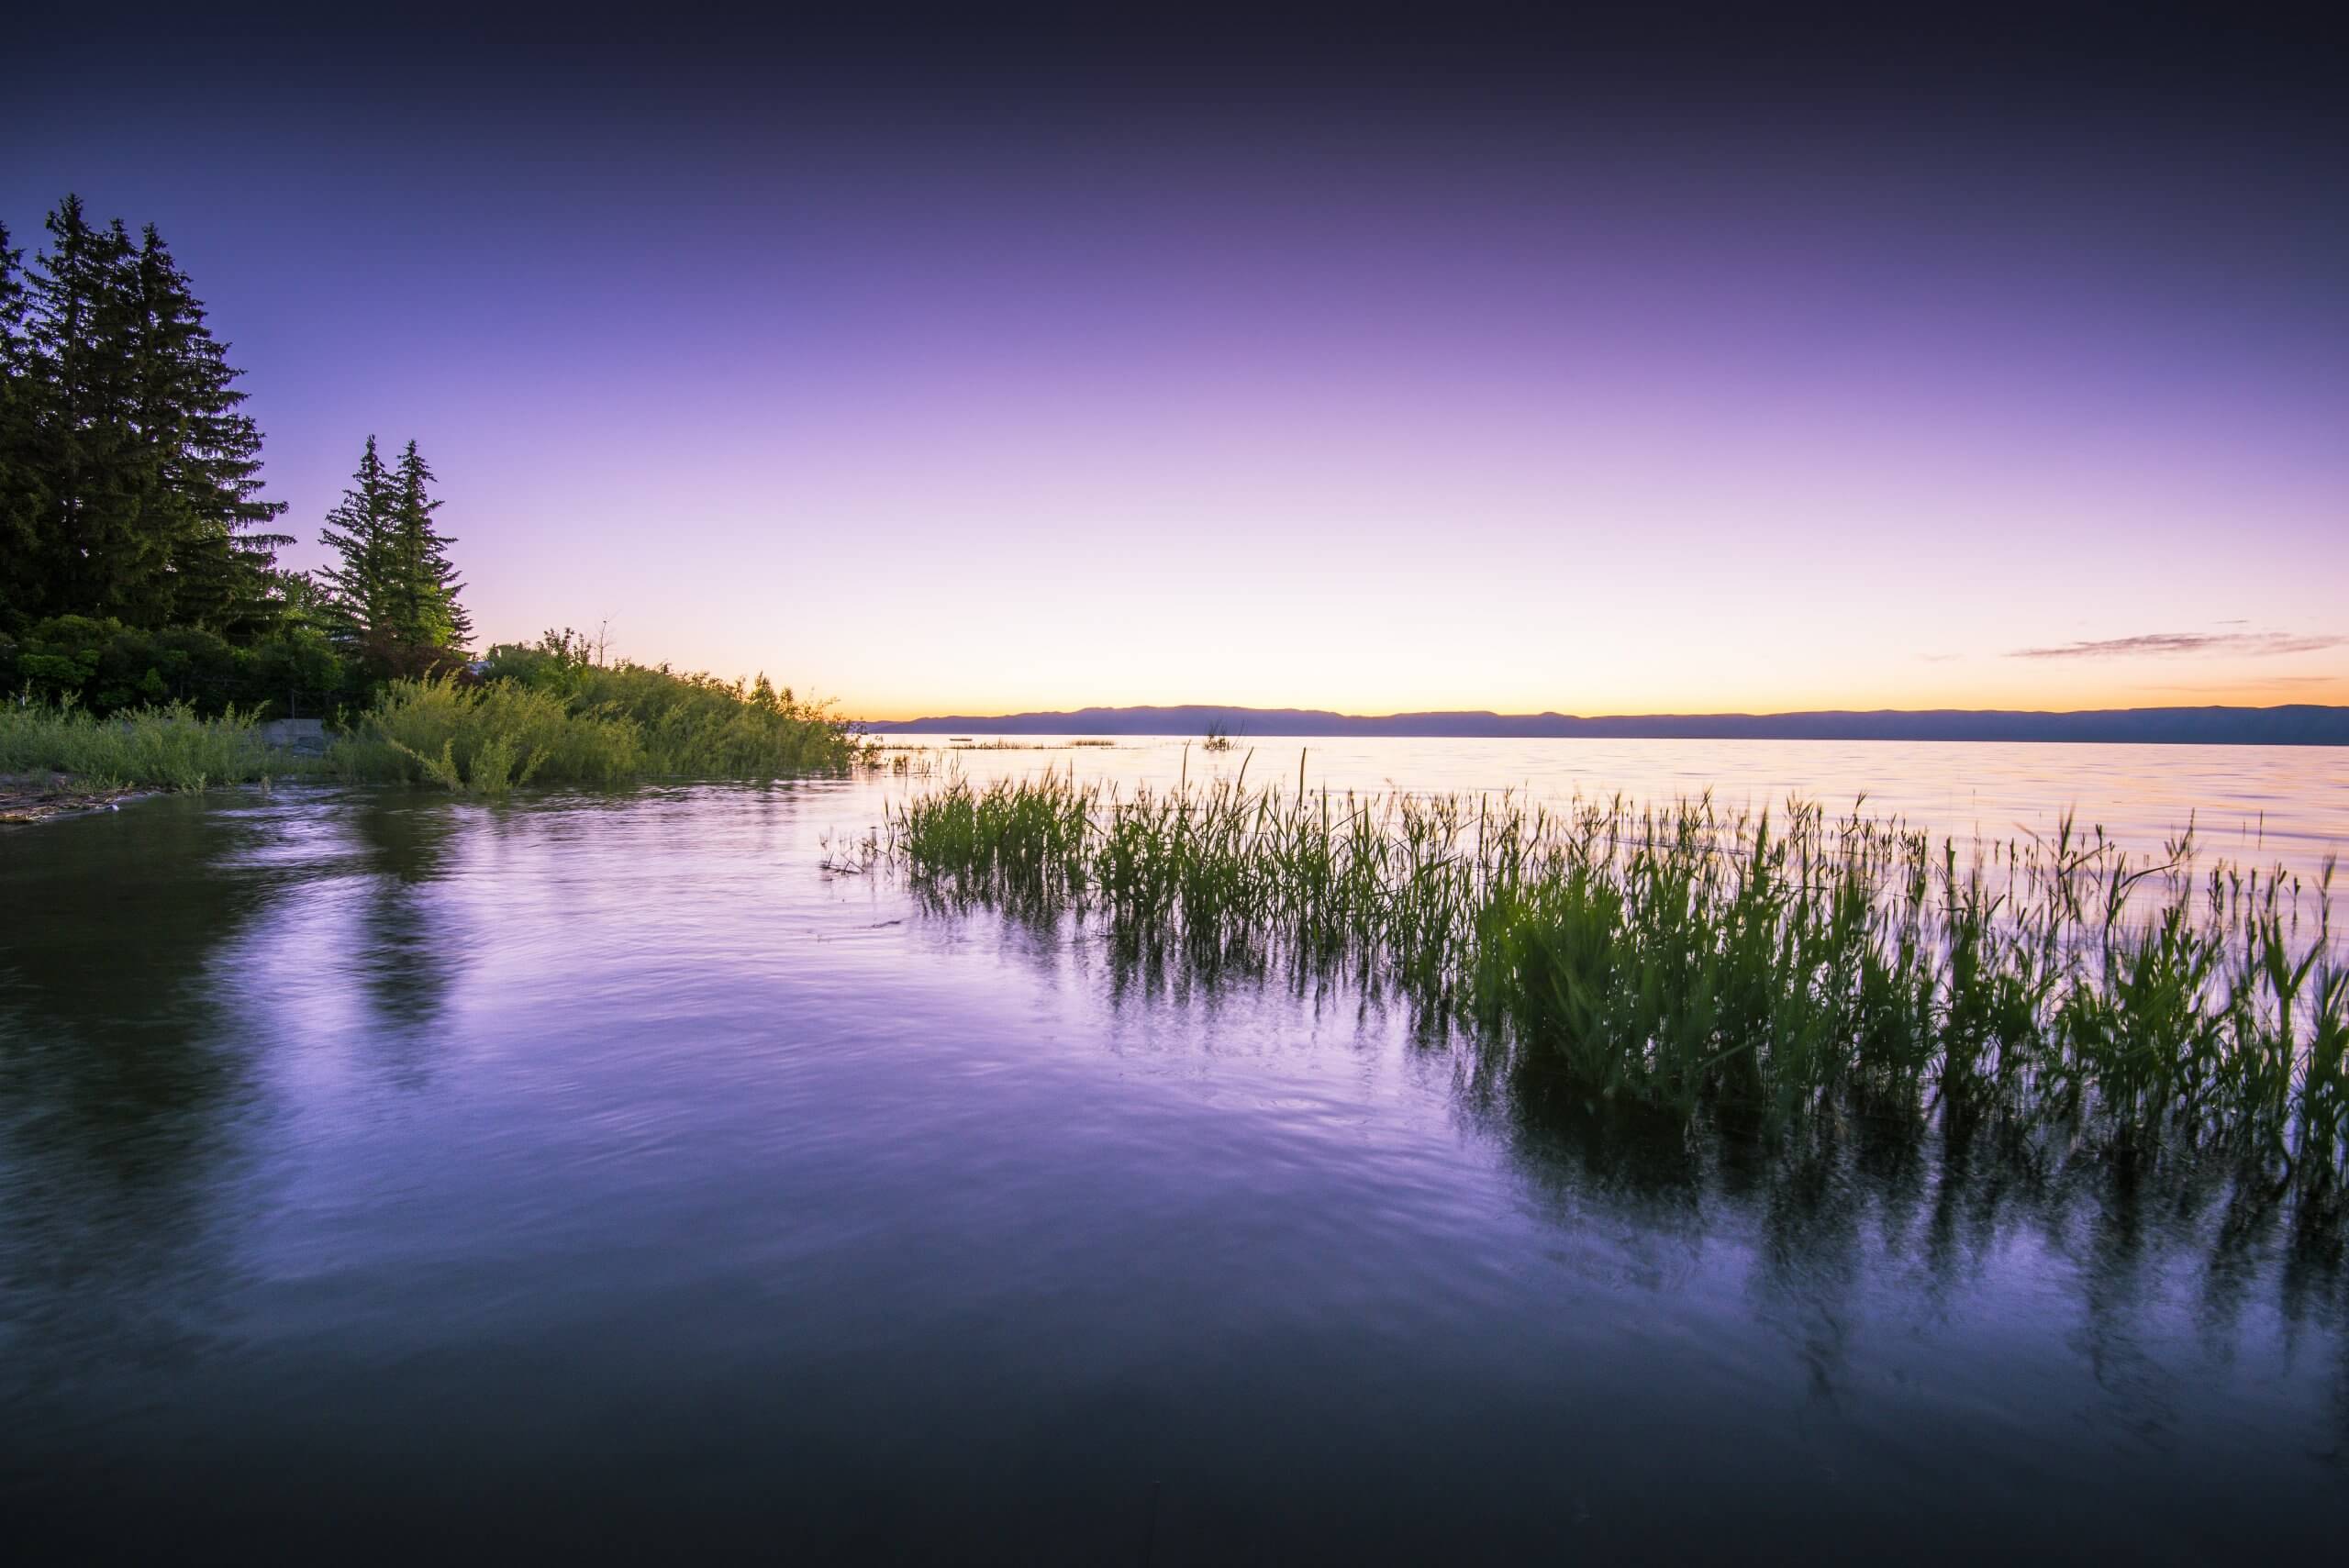 A purple-colored sunrise over Bear Lake.